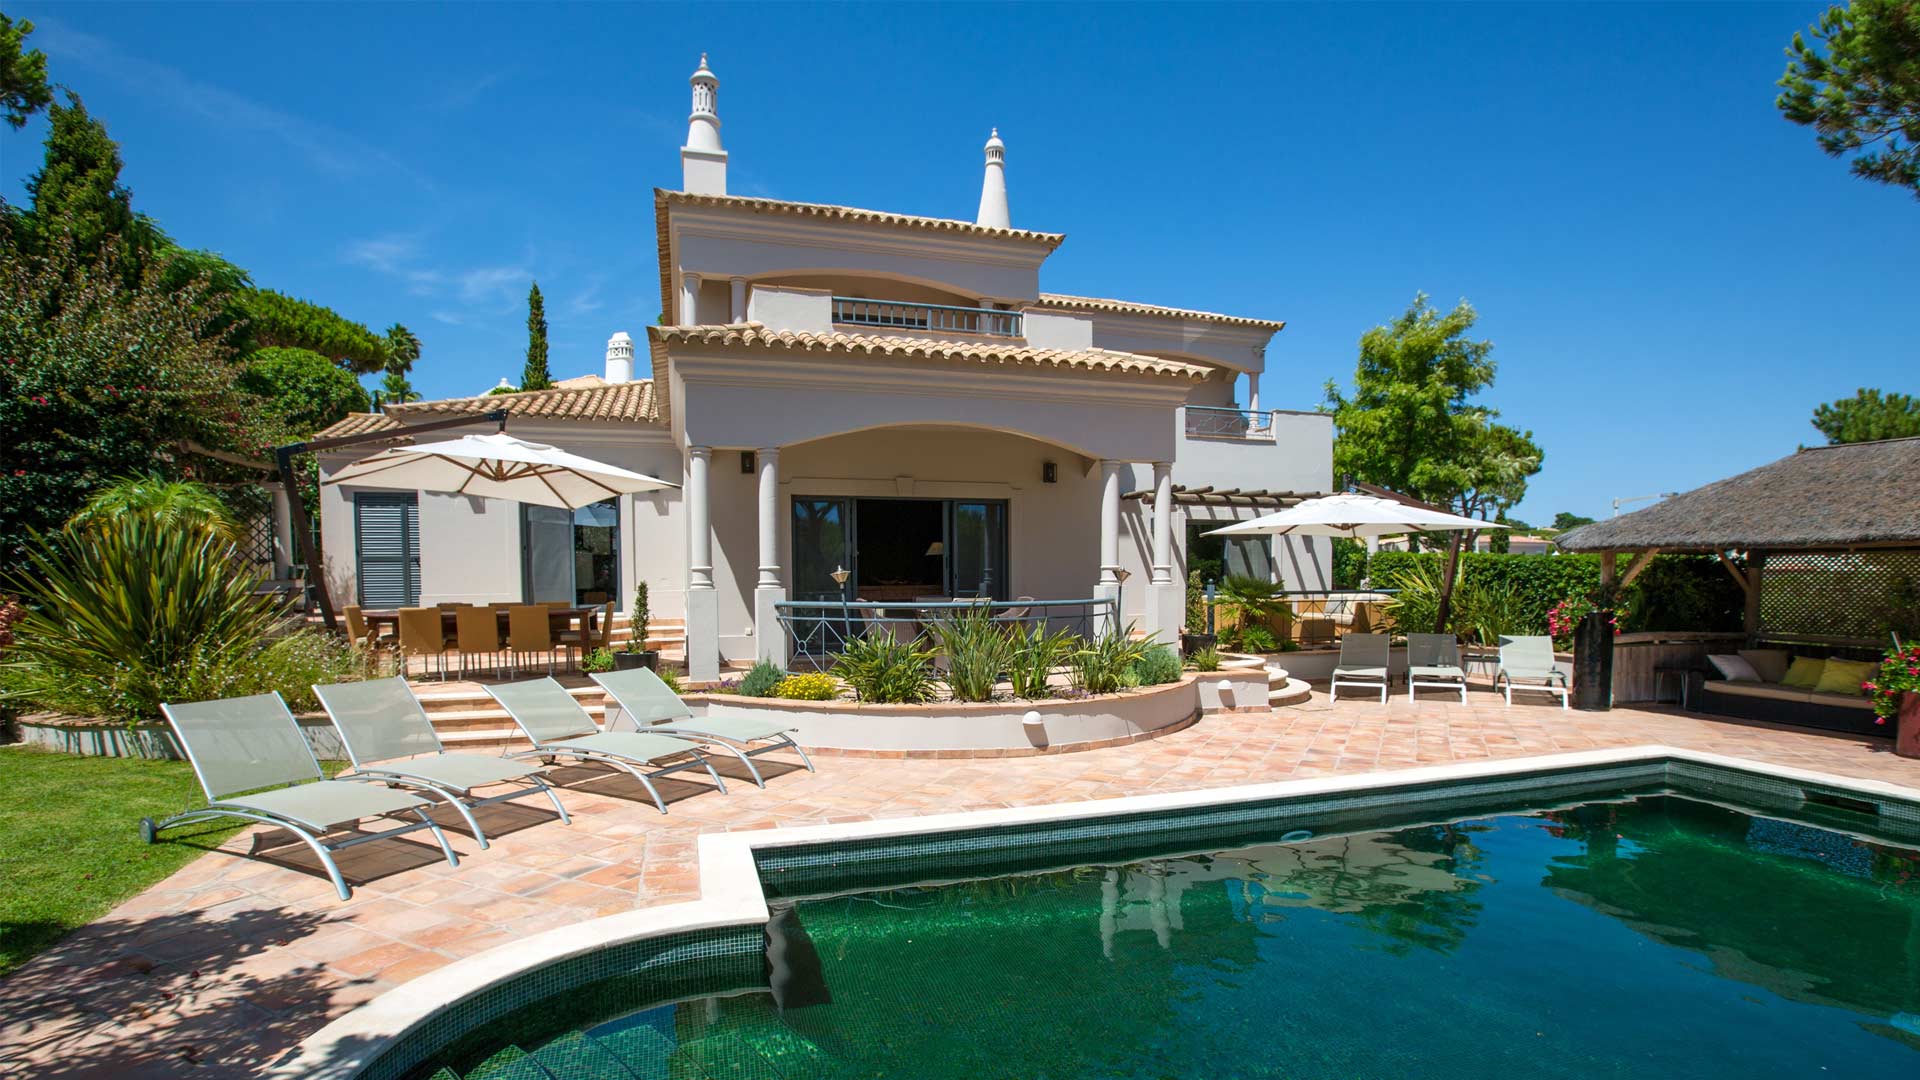 Villa Villa Cacilia, Rental in Algarve